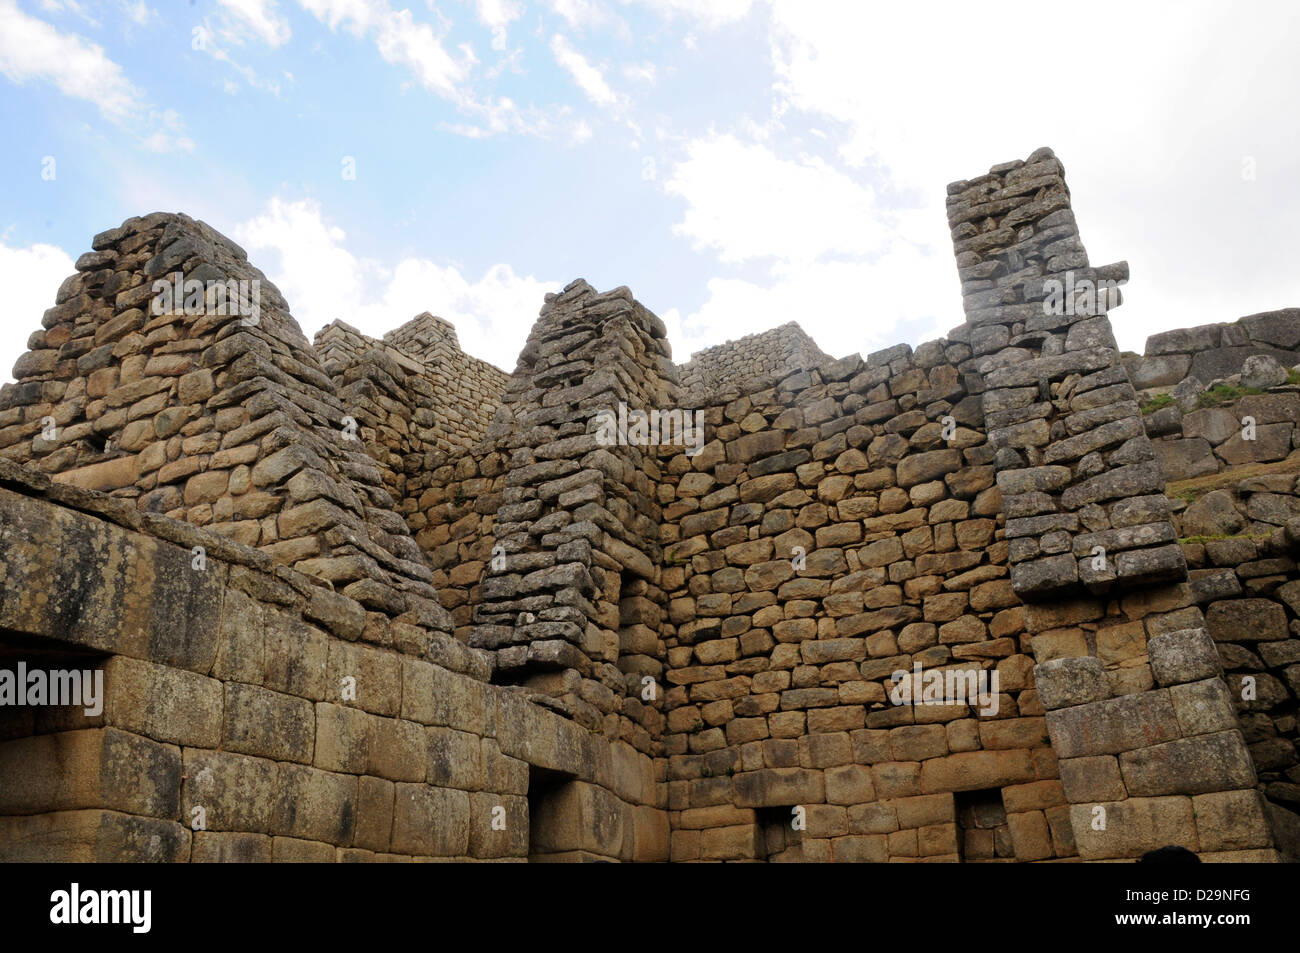 Stone Walls, Macchu Picchu, Peru Stock Photo